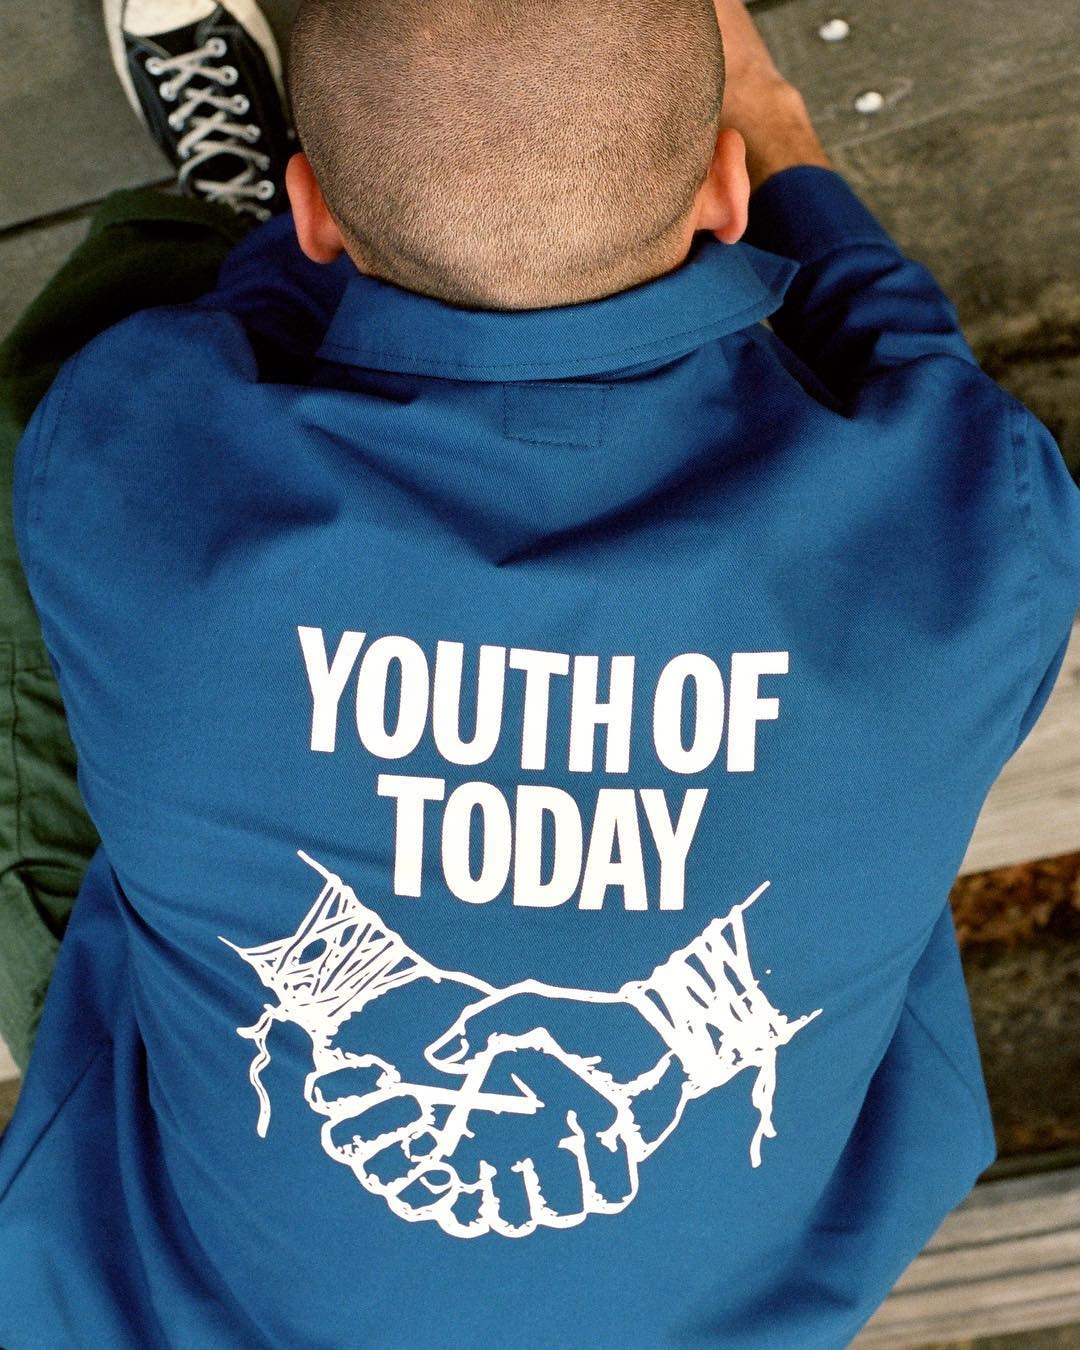 ノア ブレンドン・バベンジン ユース・オブ・トゥデイ　Youth of Today x NOAH Collaboration Announcement hardcore punk band new york streetwear rock & roll release info 